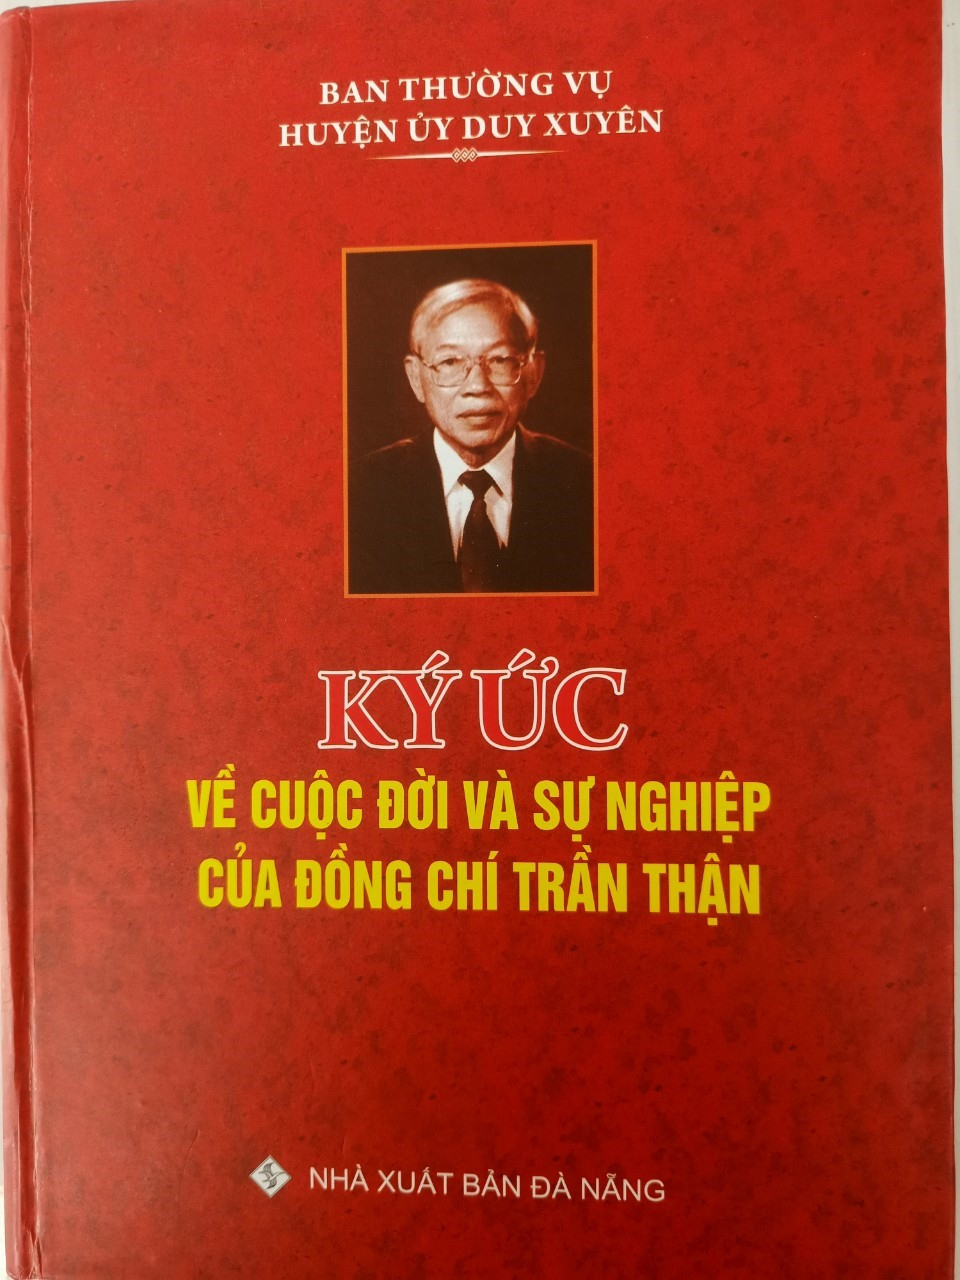 Bìa tập sách “Ký ức về cuộc đời và sự nghiệp đồng chí Trần Thận.